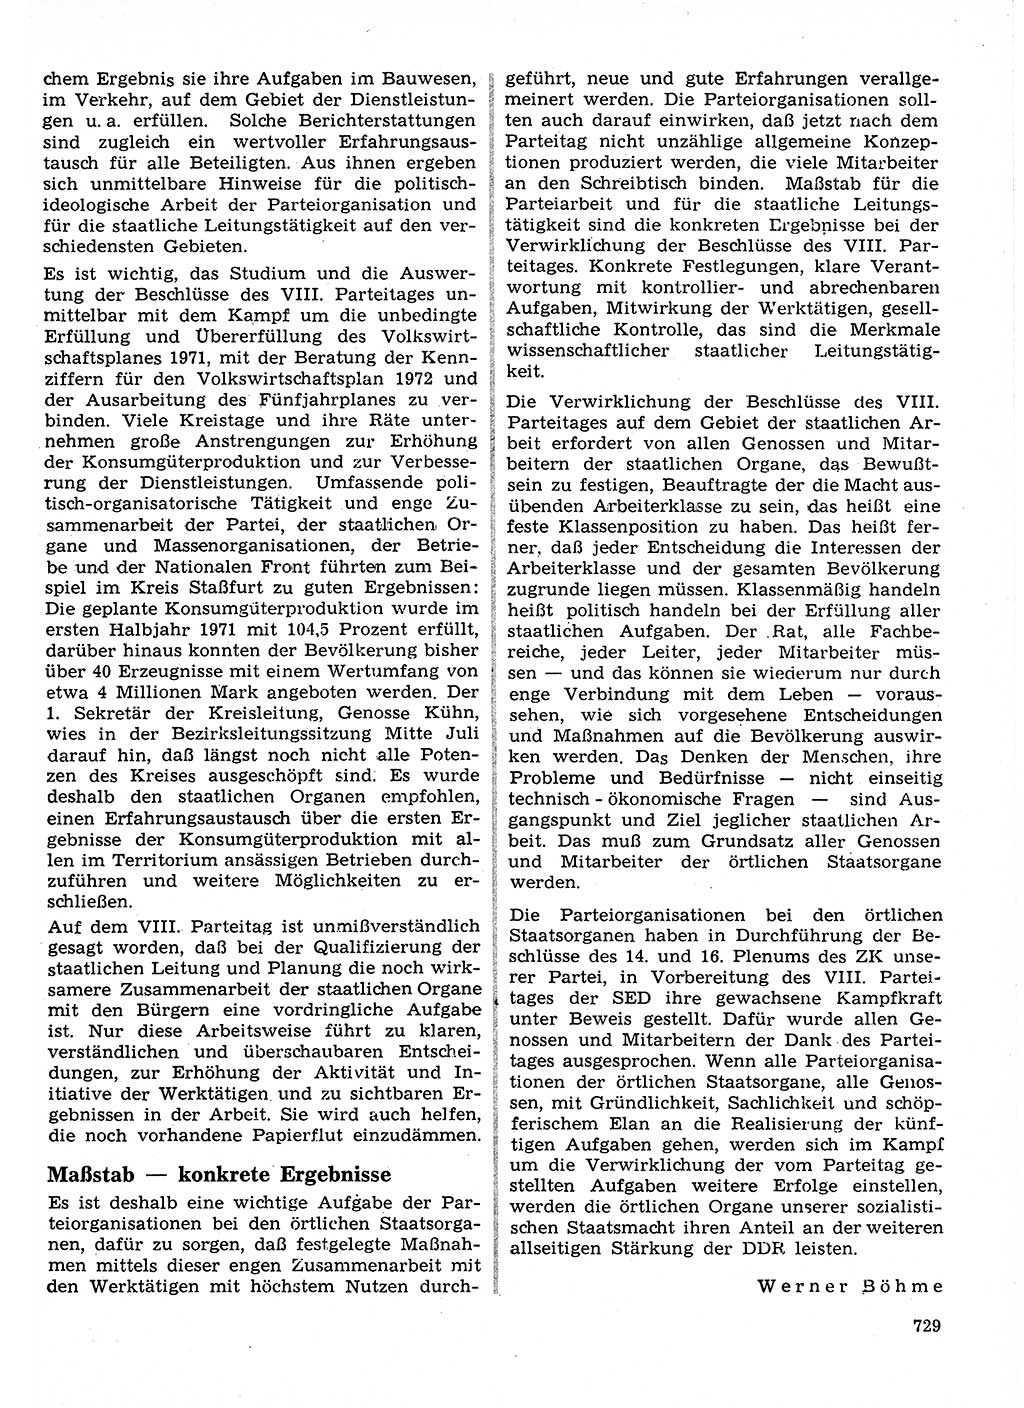 Neuer Weg (NW), Organ des Zentralkomitees (ZK) der SED (Sozialistische Einheitspartei Deutschlands) für Fragen des Parteilebens, 26. Jahrgang [Deutsche Demokratische Republik (DDR)] 1971, Seite 729 (NW ZK SED DDR 1971, S. 729)